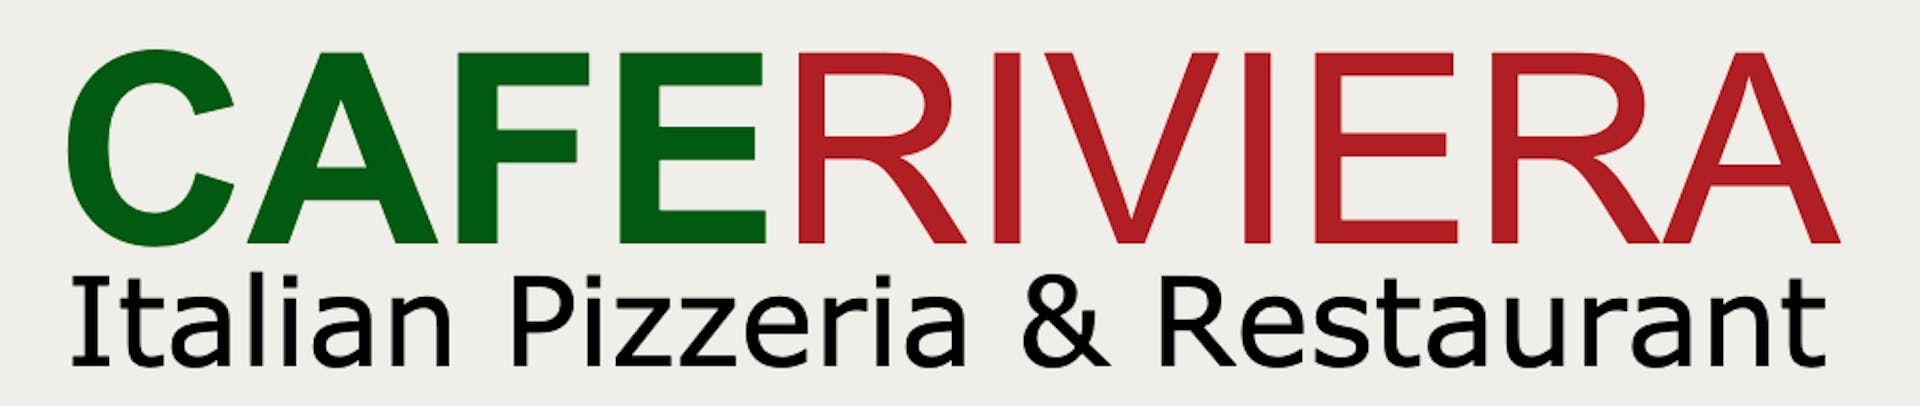 Home of Riviera Pizza - Riviera Pizza RESTAURANT